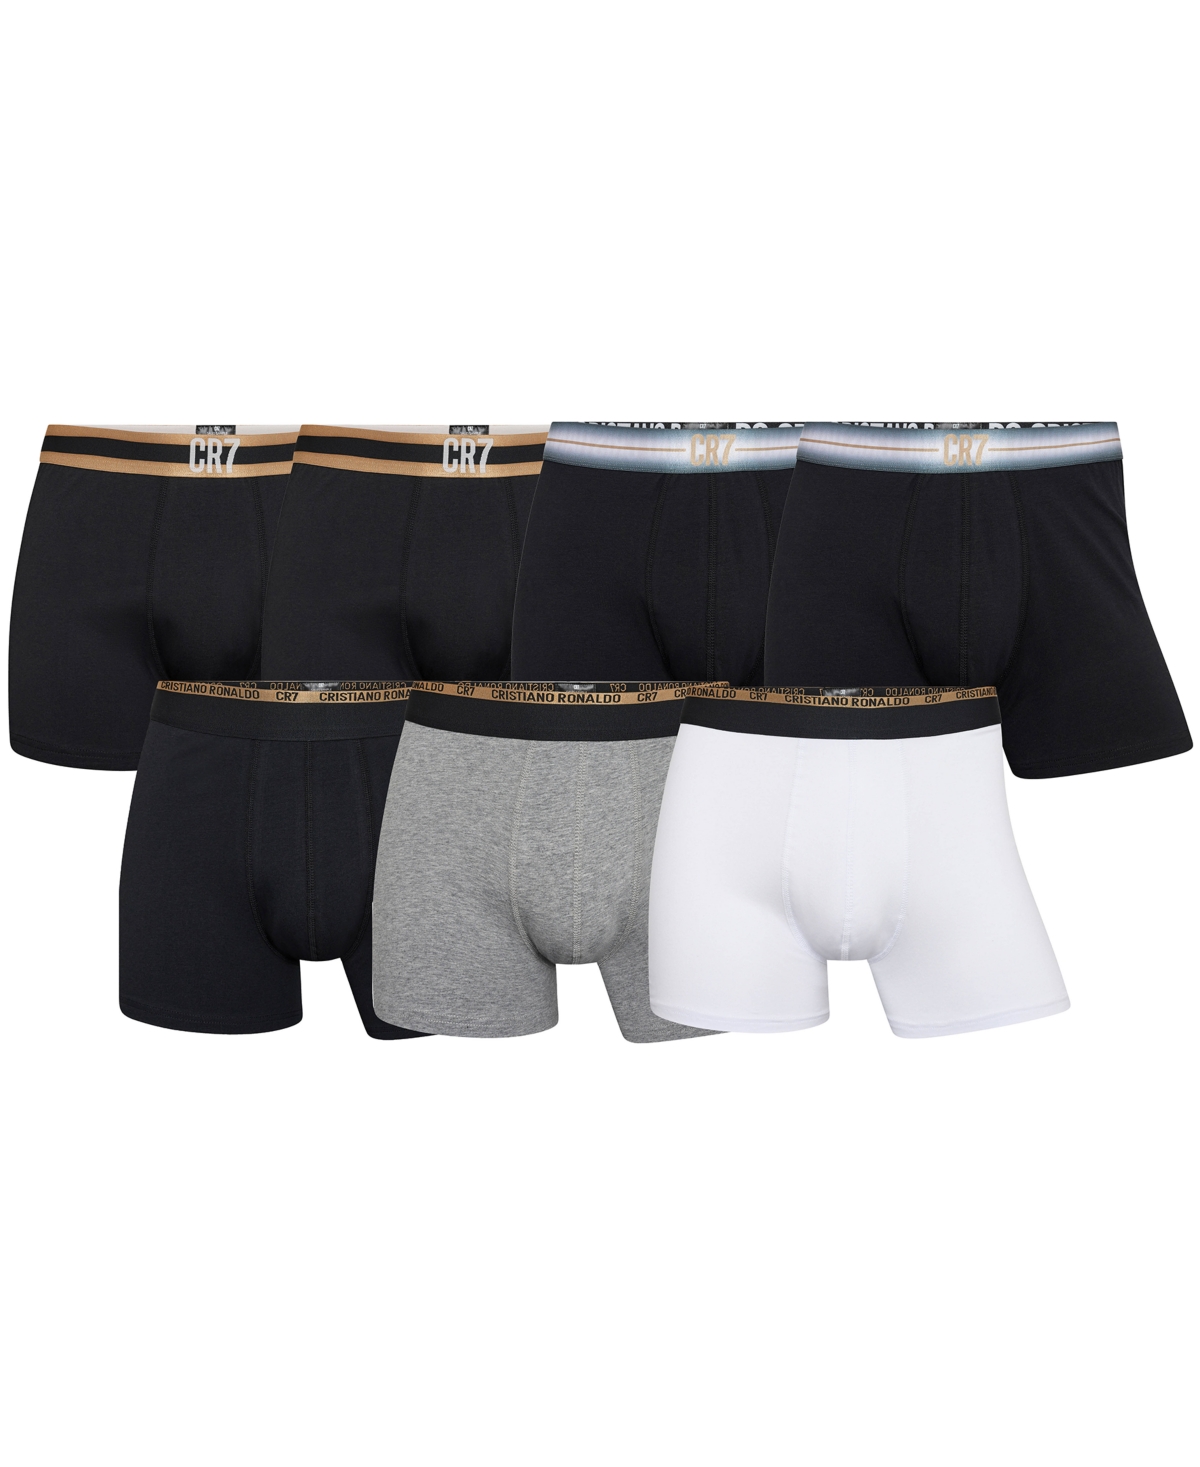 CR7 Men's 3-Pack Cotton Blend Briefs – CR7 Underwear